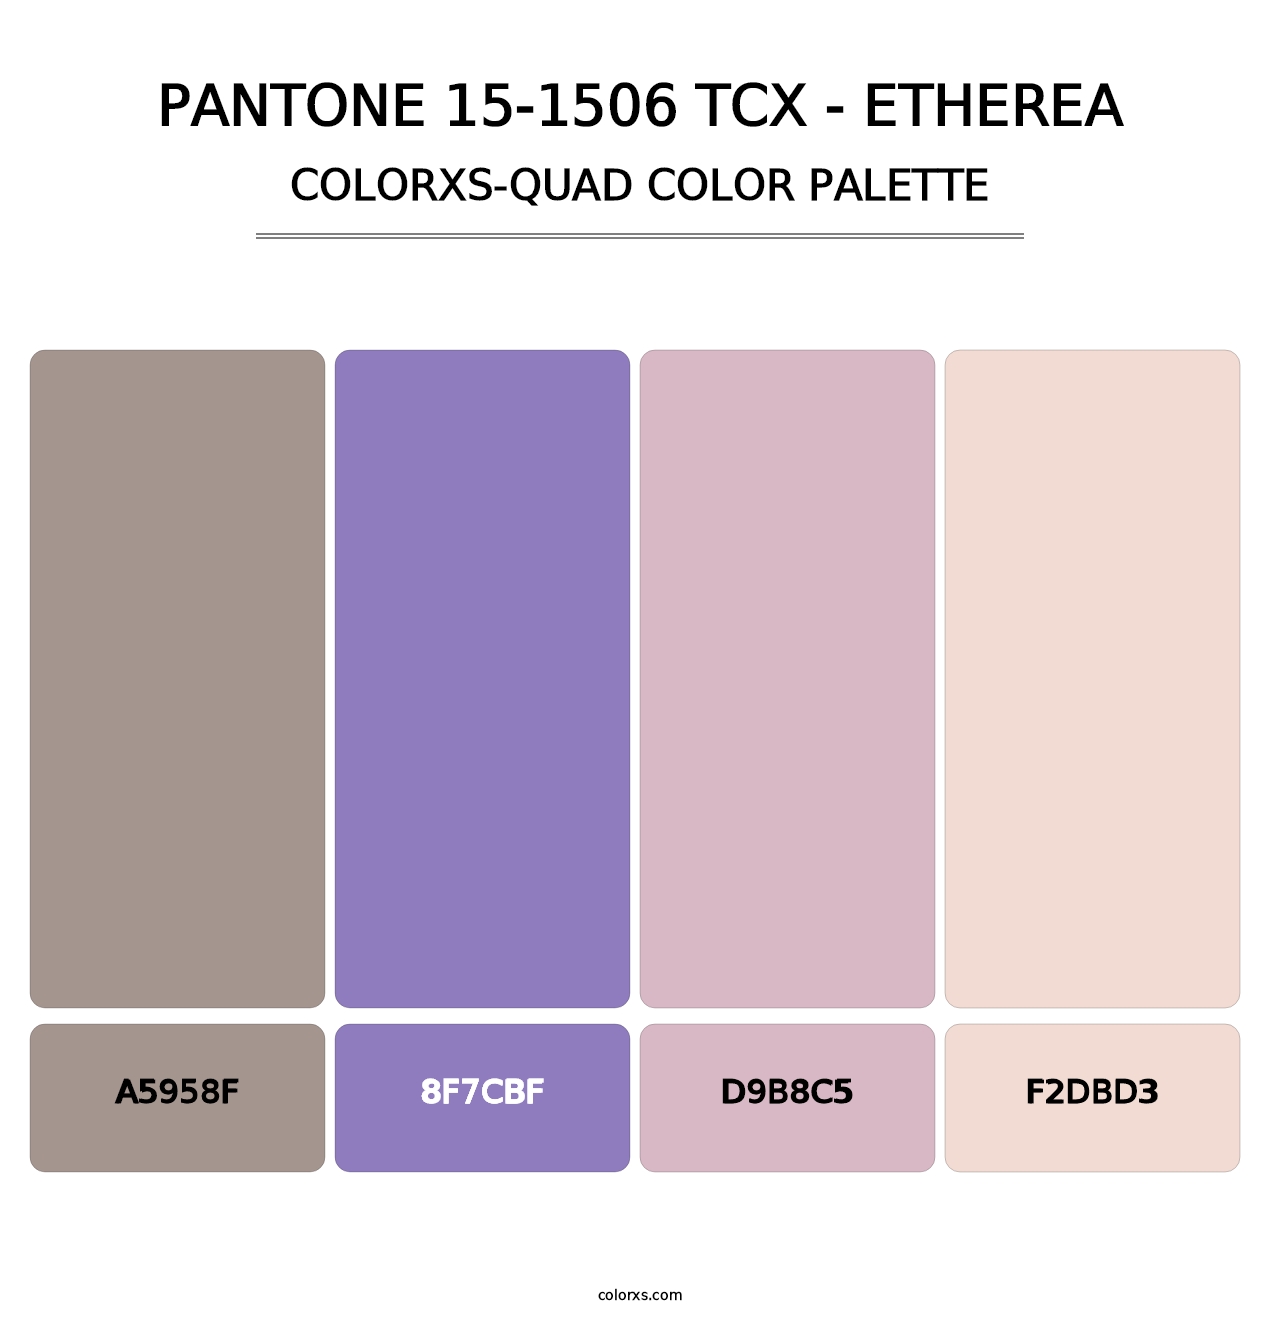 PANTONE 15-1506 TCX - Etherea - Colorxs Quad Palette